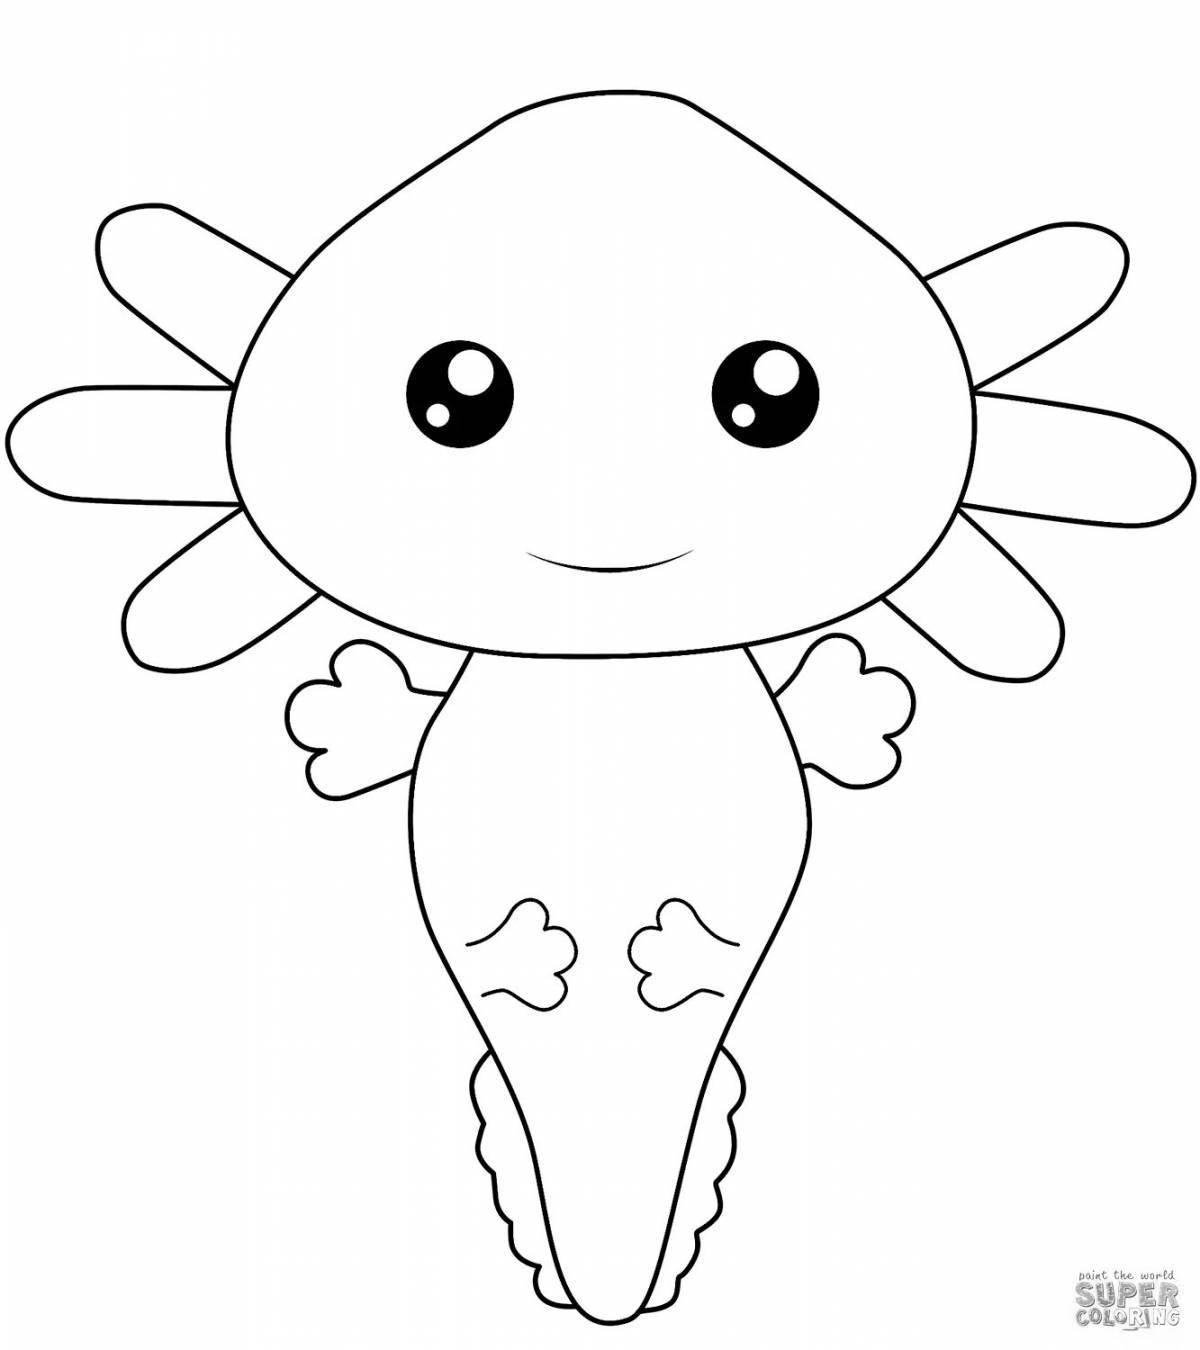 Adorable minecraft axolotl coloring book